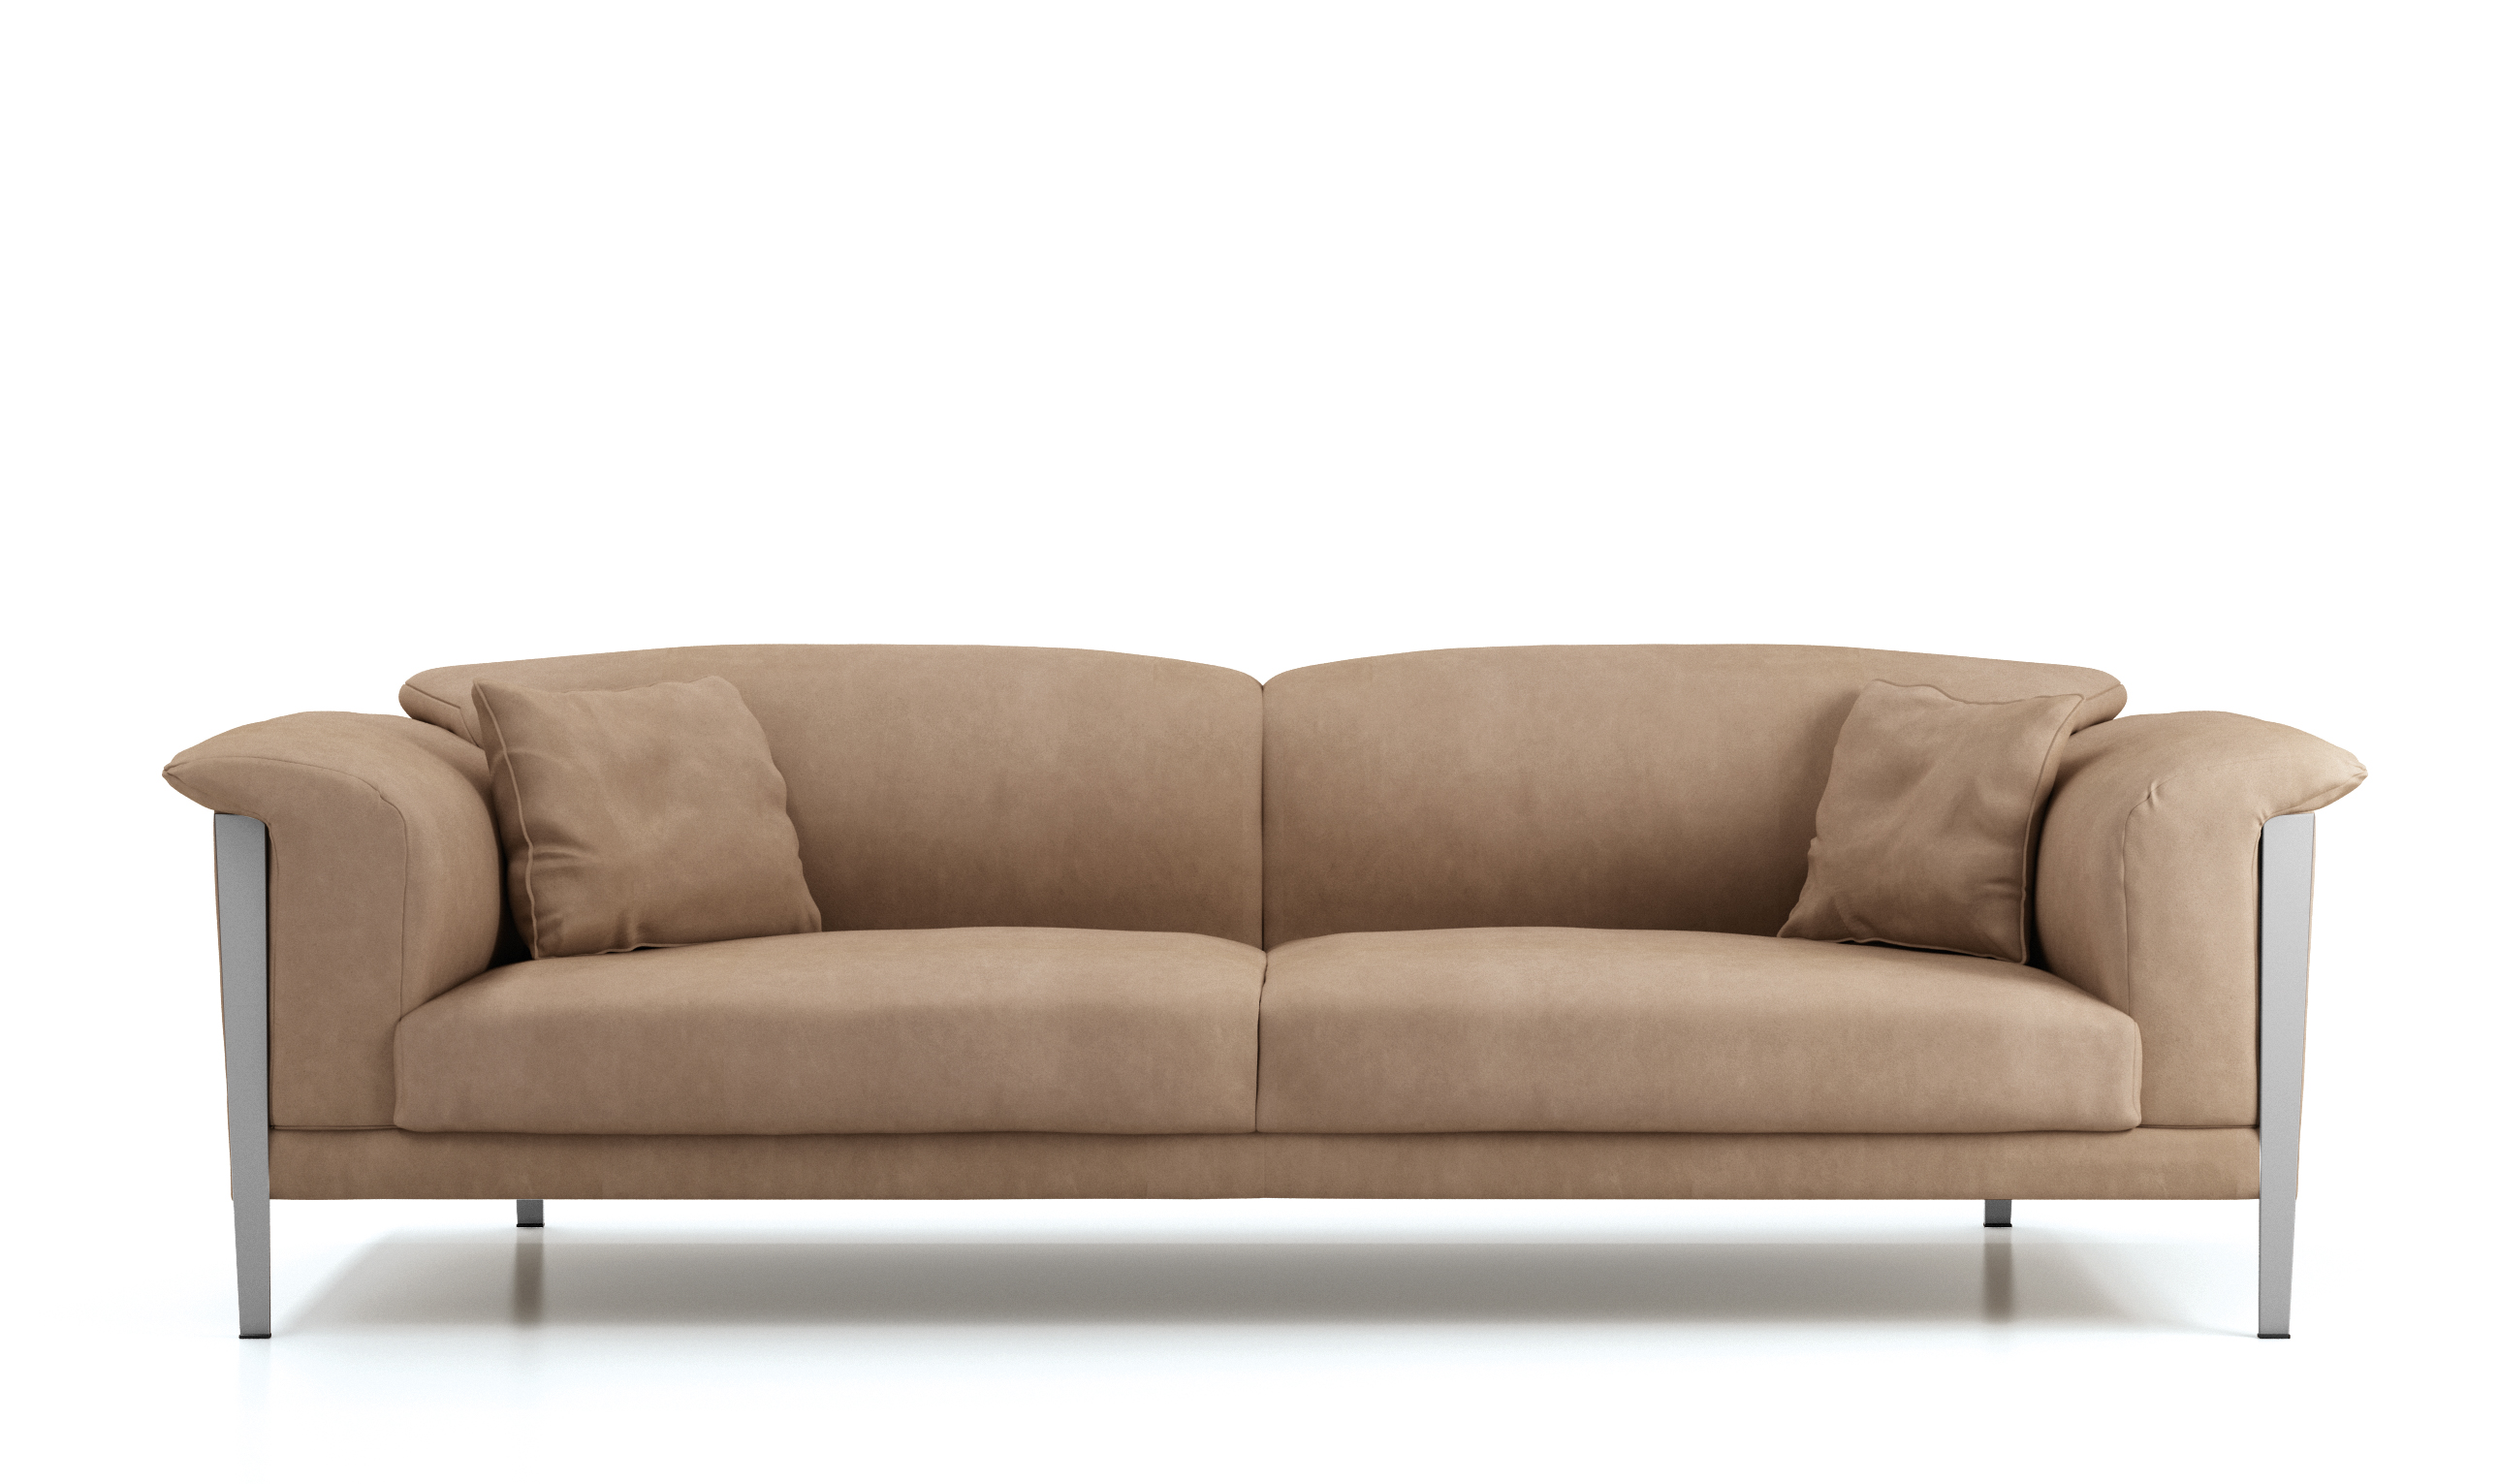 Cream Color Extra Soft Padded Leather Sofa Set Sacramento